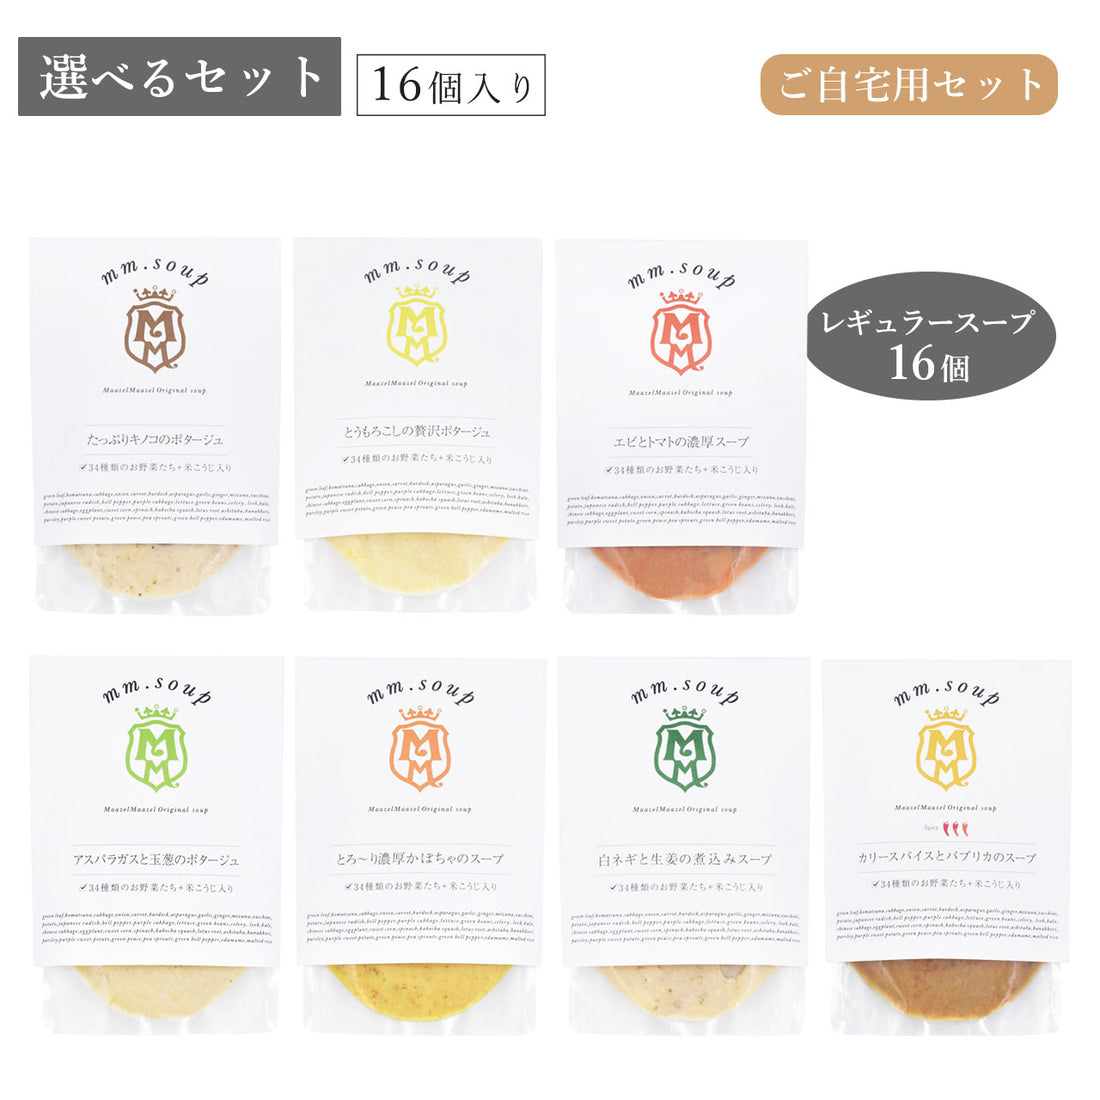 【選べるセット】レギュラースープ7種から16個選べるご自宅用スープセット